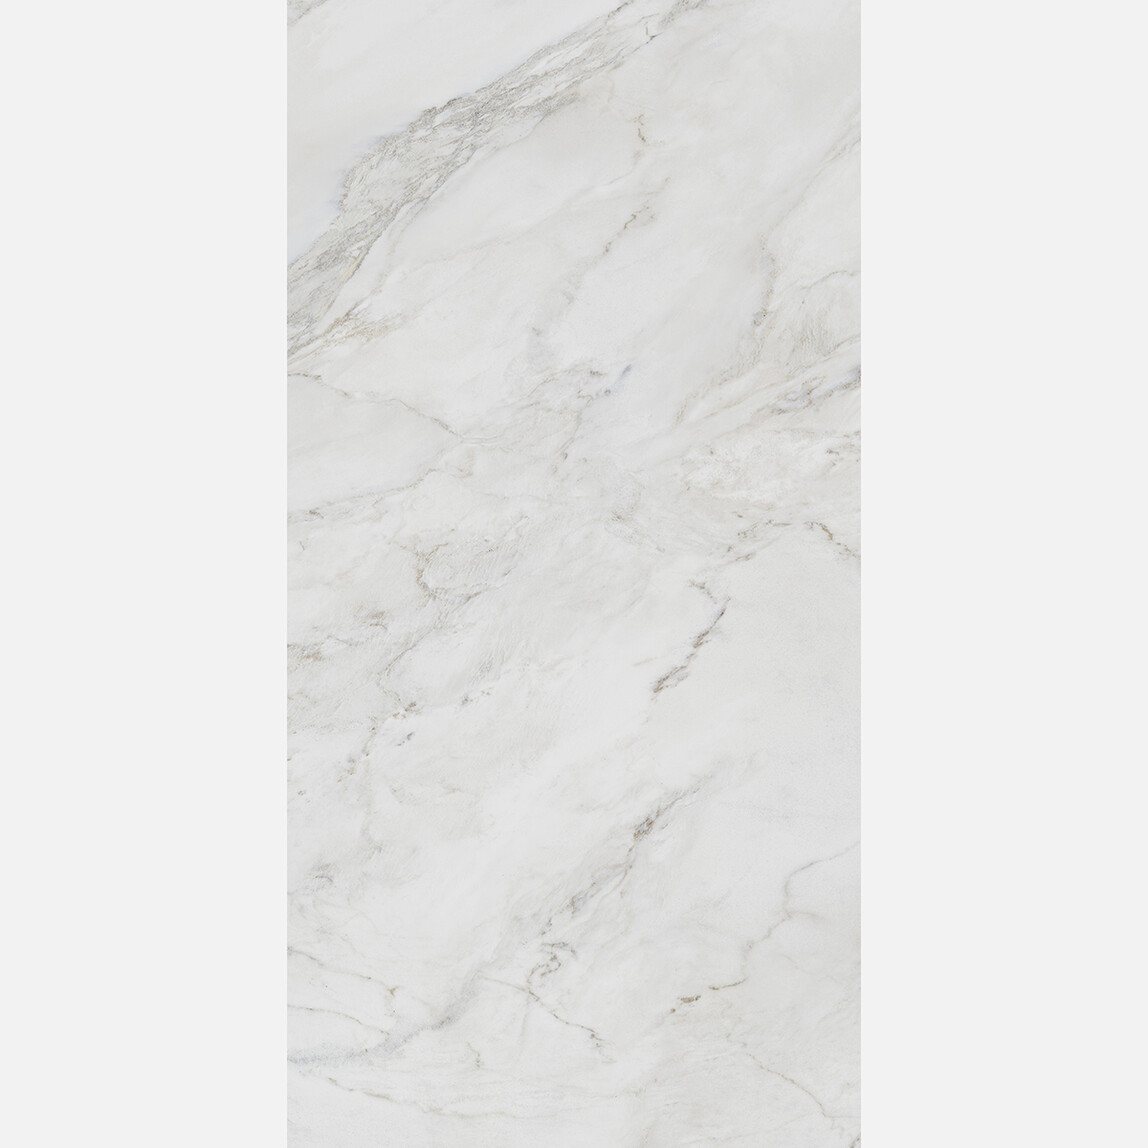    Yurtbay Seramik Anderson Sırlı Granit 60X120 Kutu Beyaz 1,44 m2 